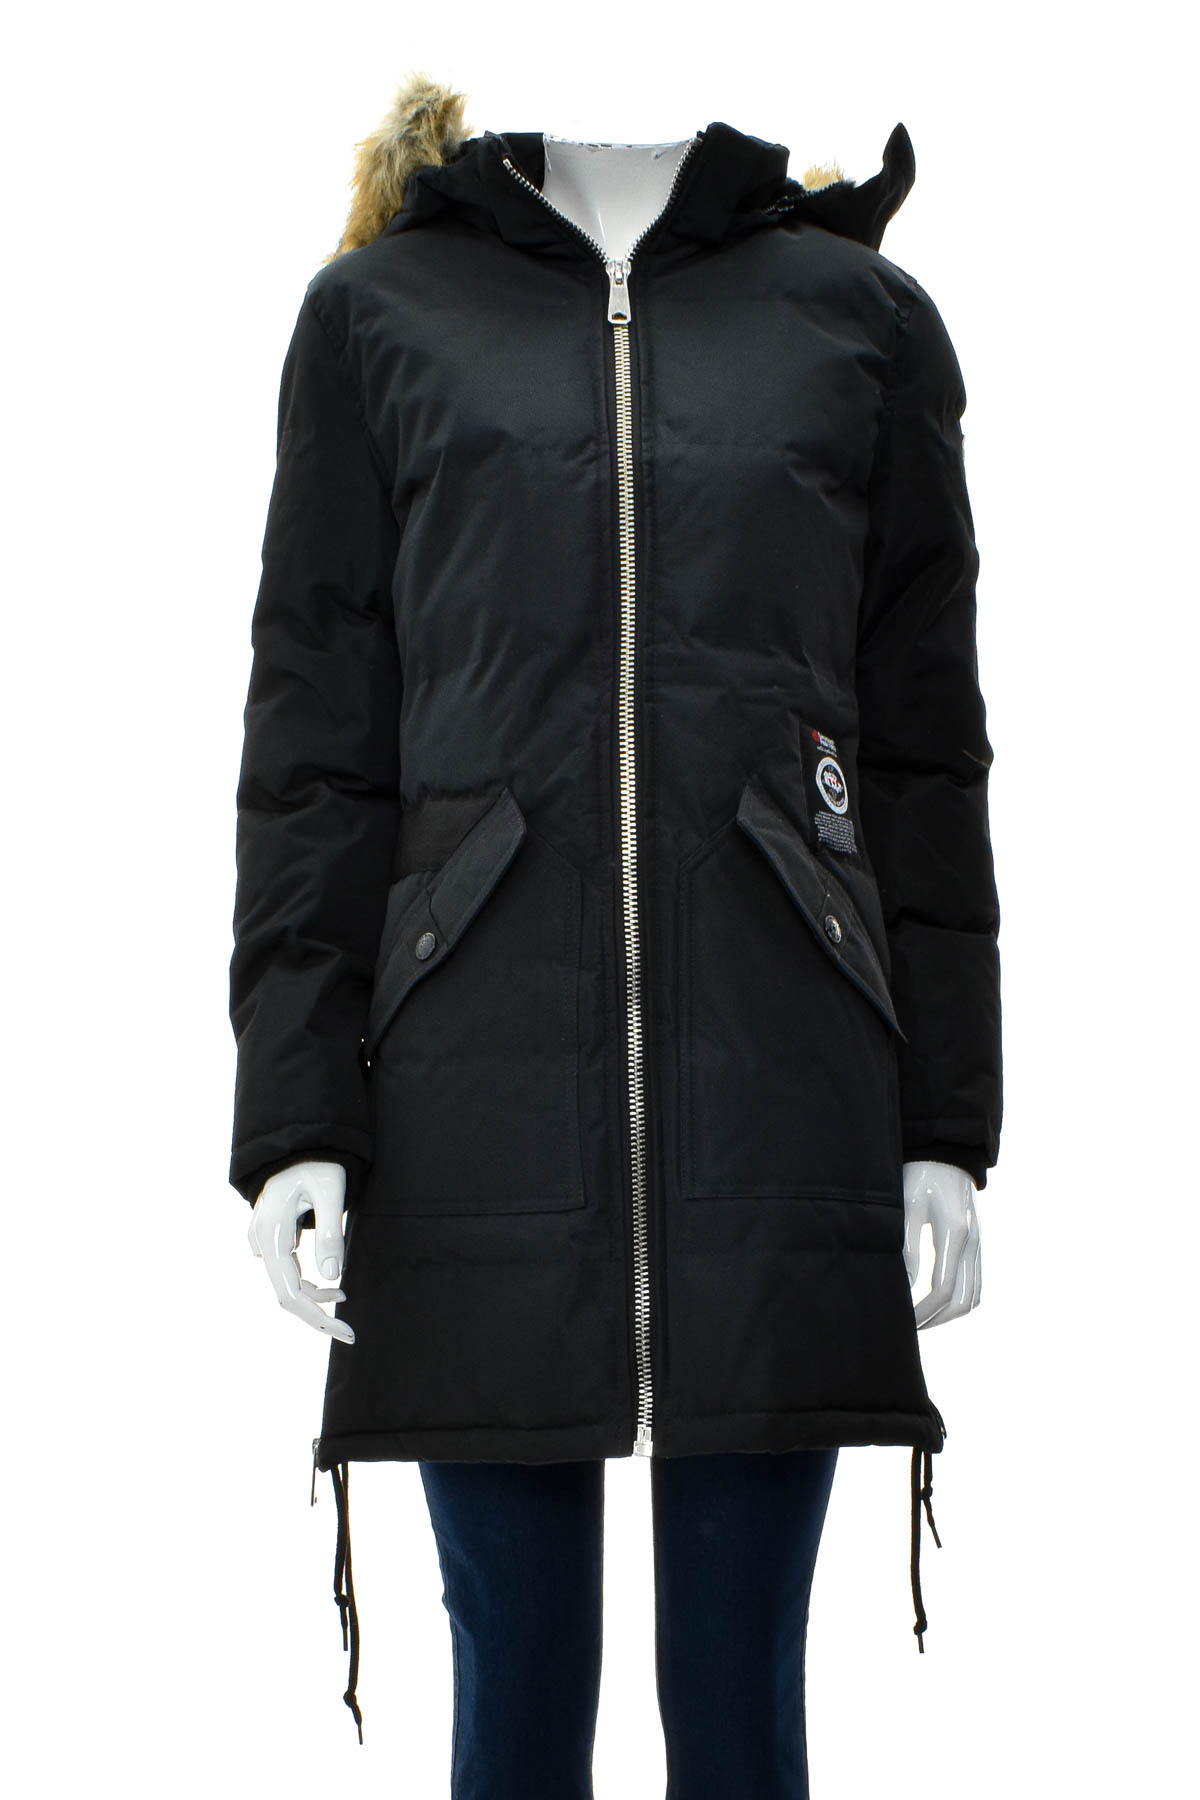 Female jacket - Canadian Peak - 0